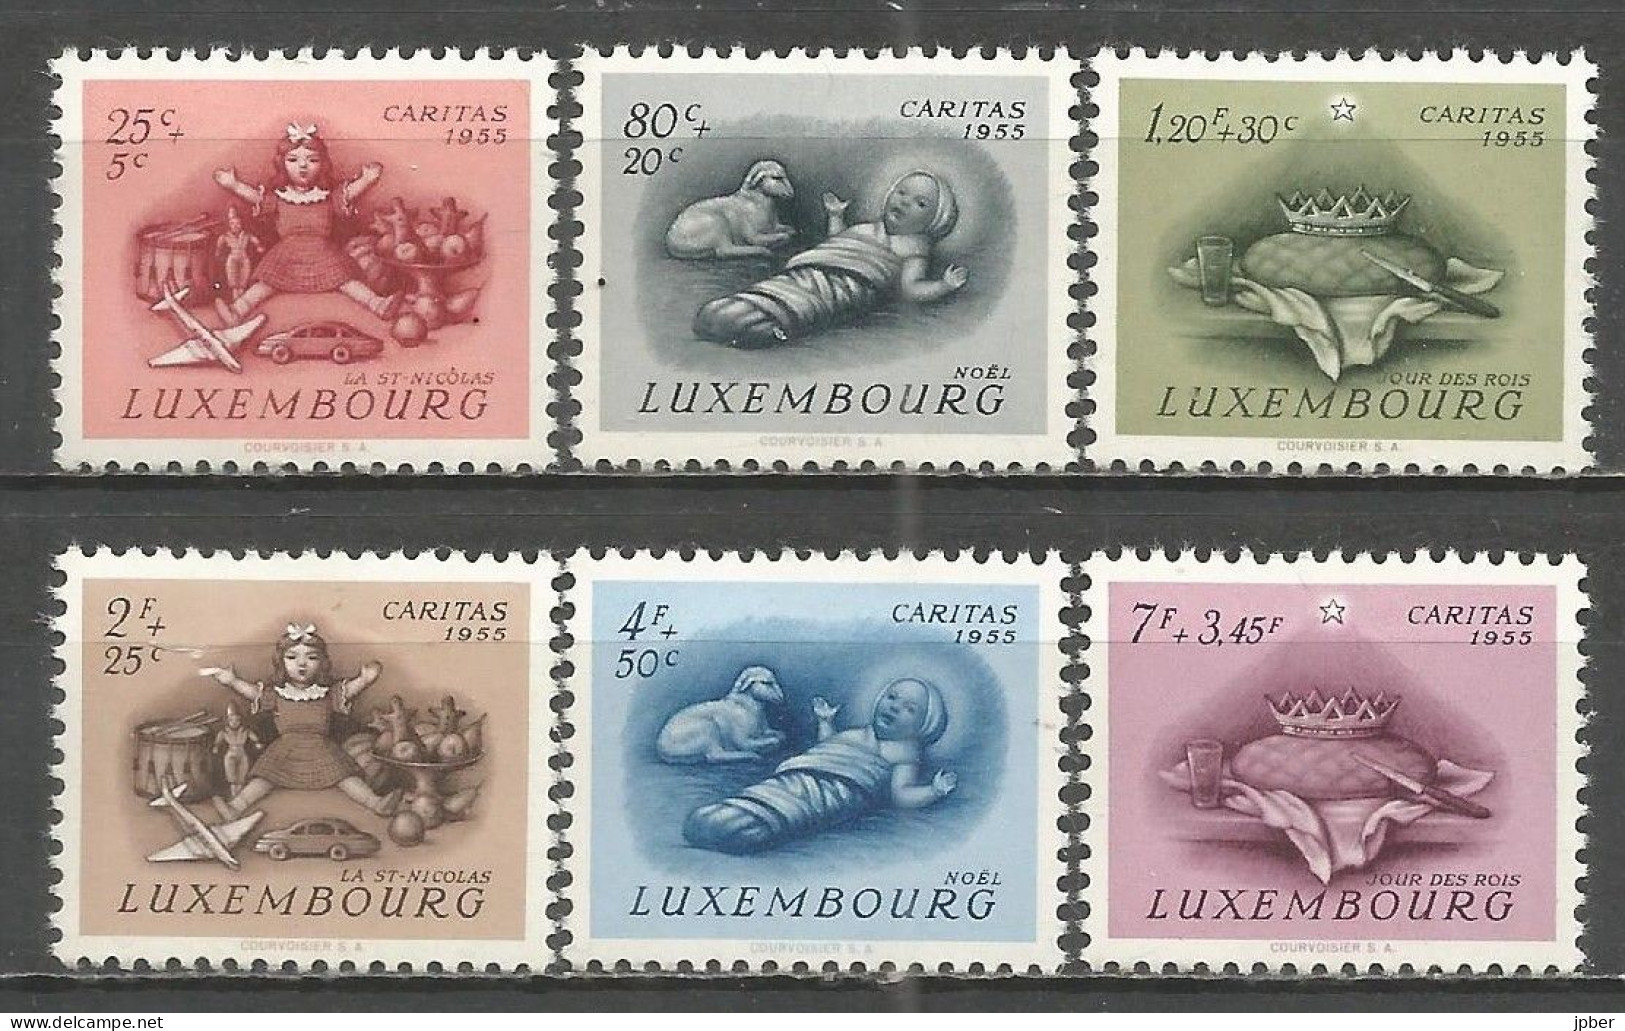 Luxembourg - MI N°541à546* - Caritas 1955 - Fête De Saint-Nicolas, Noël, Fête Des Rois - Neufs